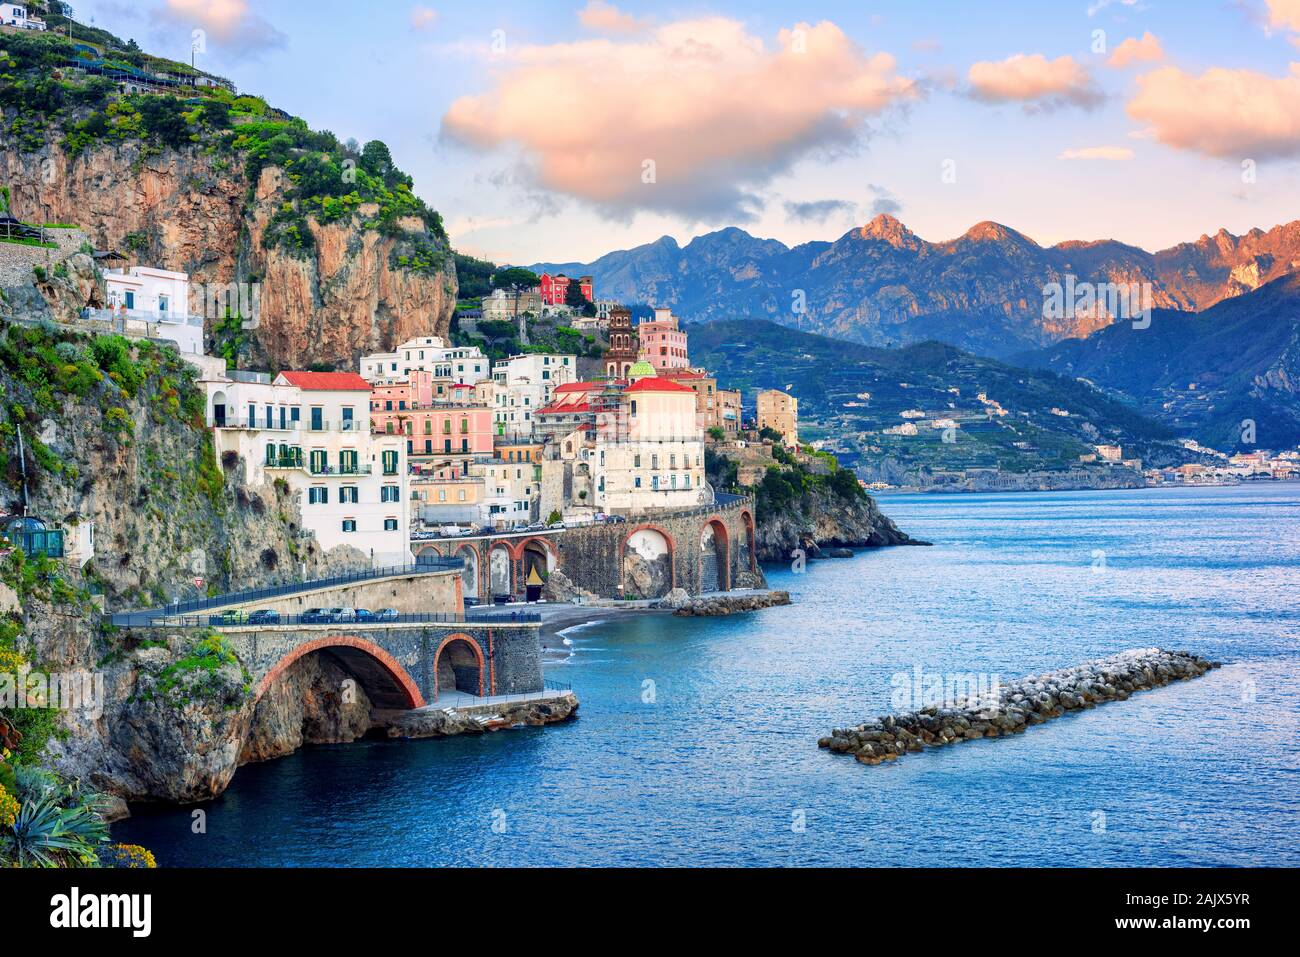 En la ciudad de Atrani mediterráneo espectacular costa Amalfi, Nápoles, Italia, en la luz del atardecer Foto de stock